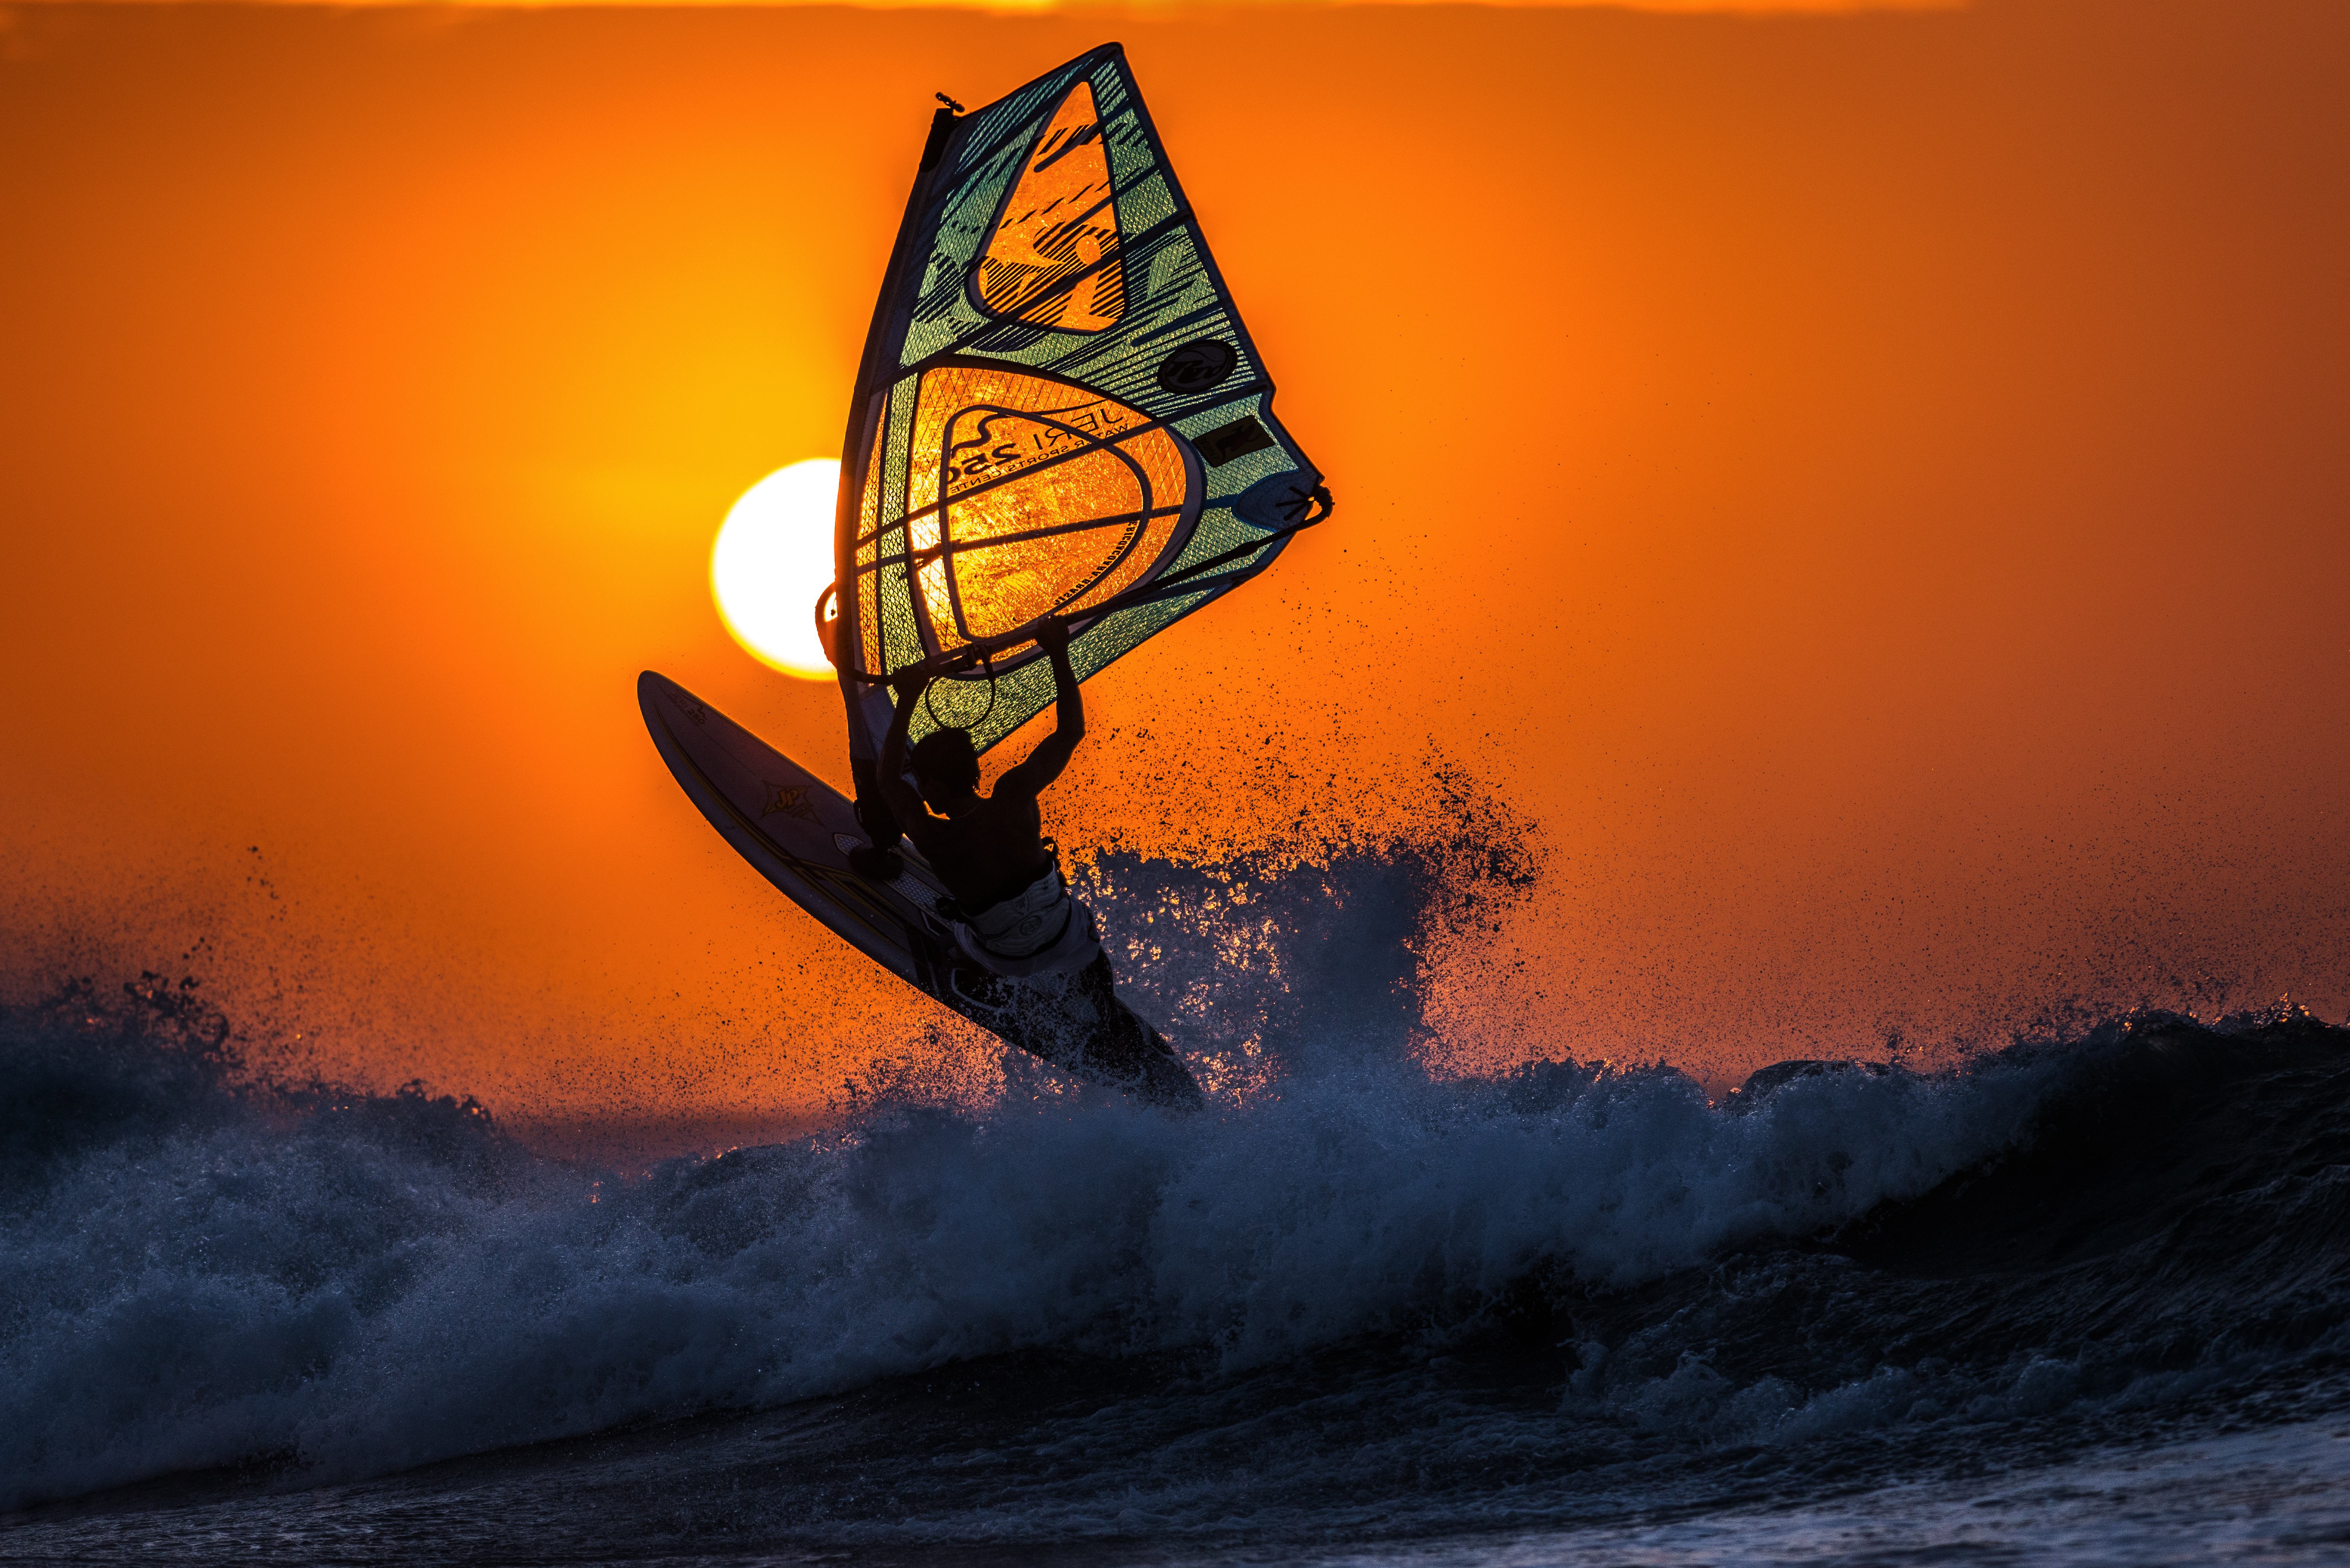 Sea Summer Sun Sunset Surfing Wave 6372x4252